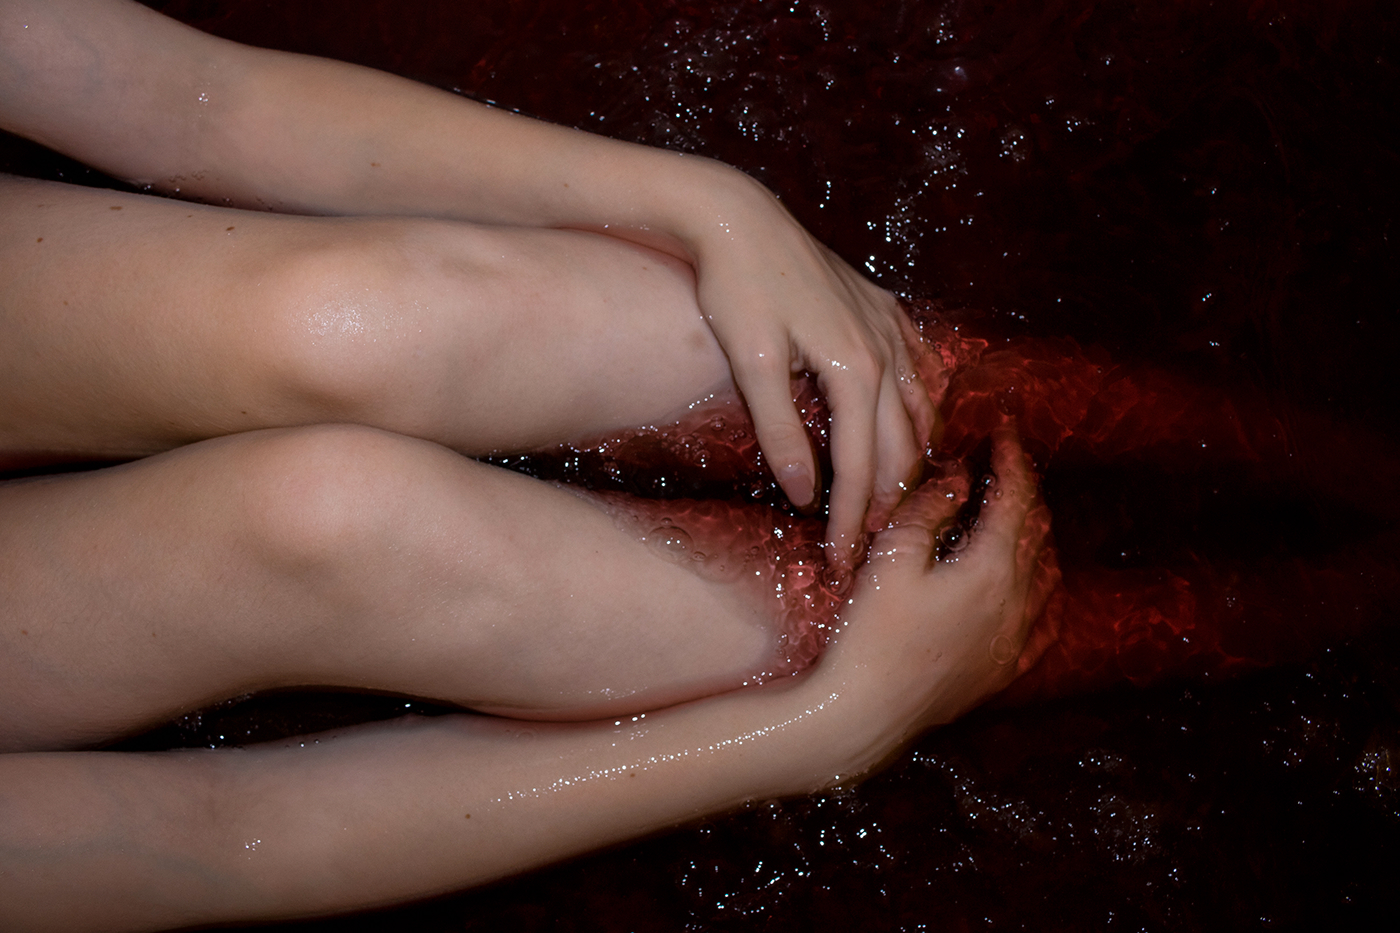 red bath experimental art blood depression anxiety Drowning girl body bath